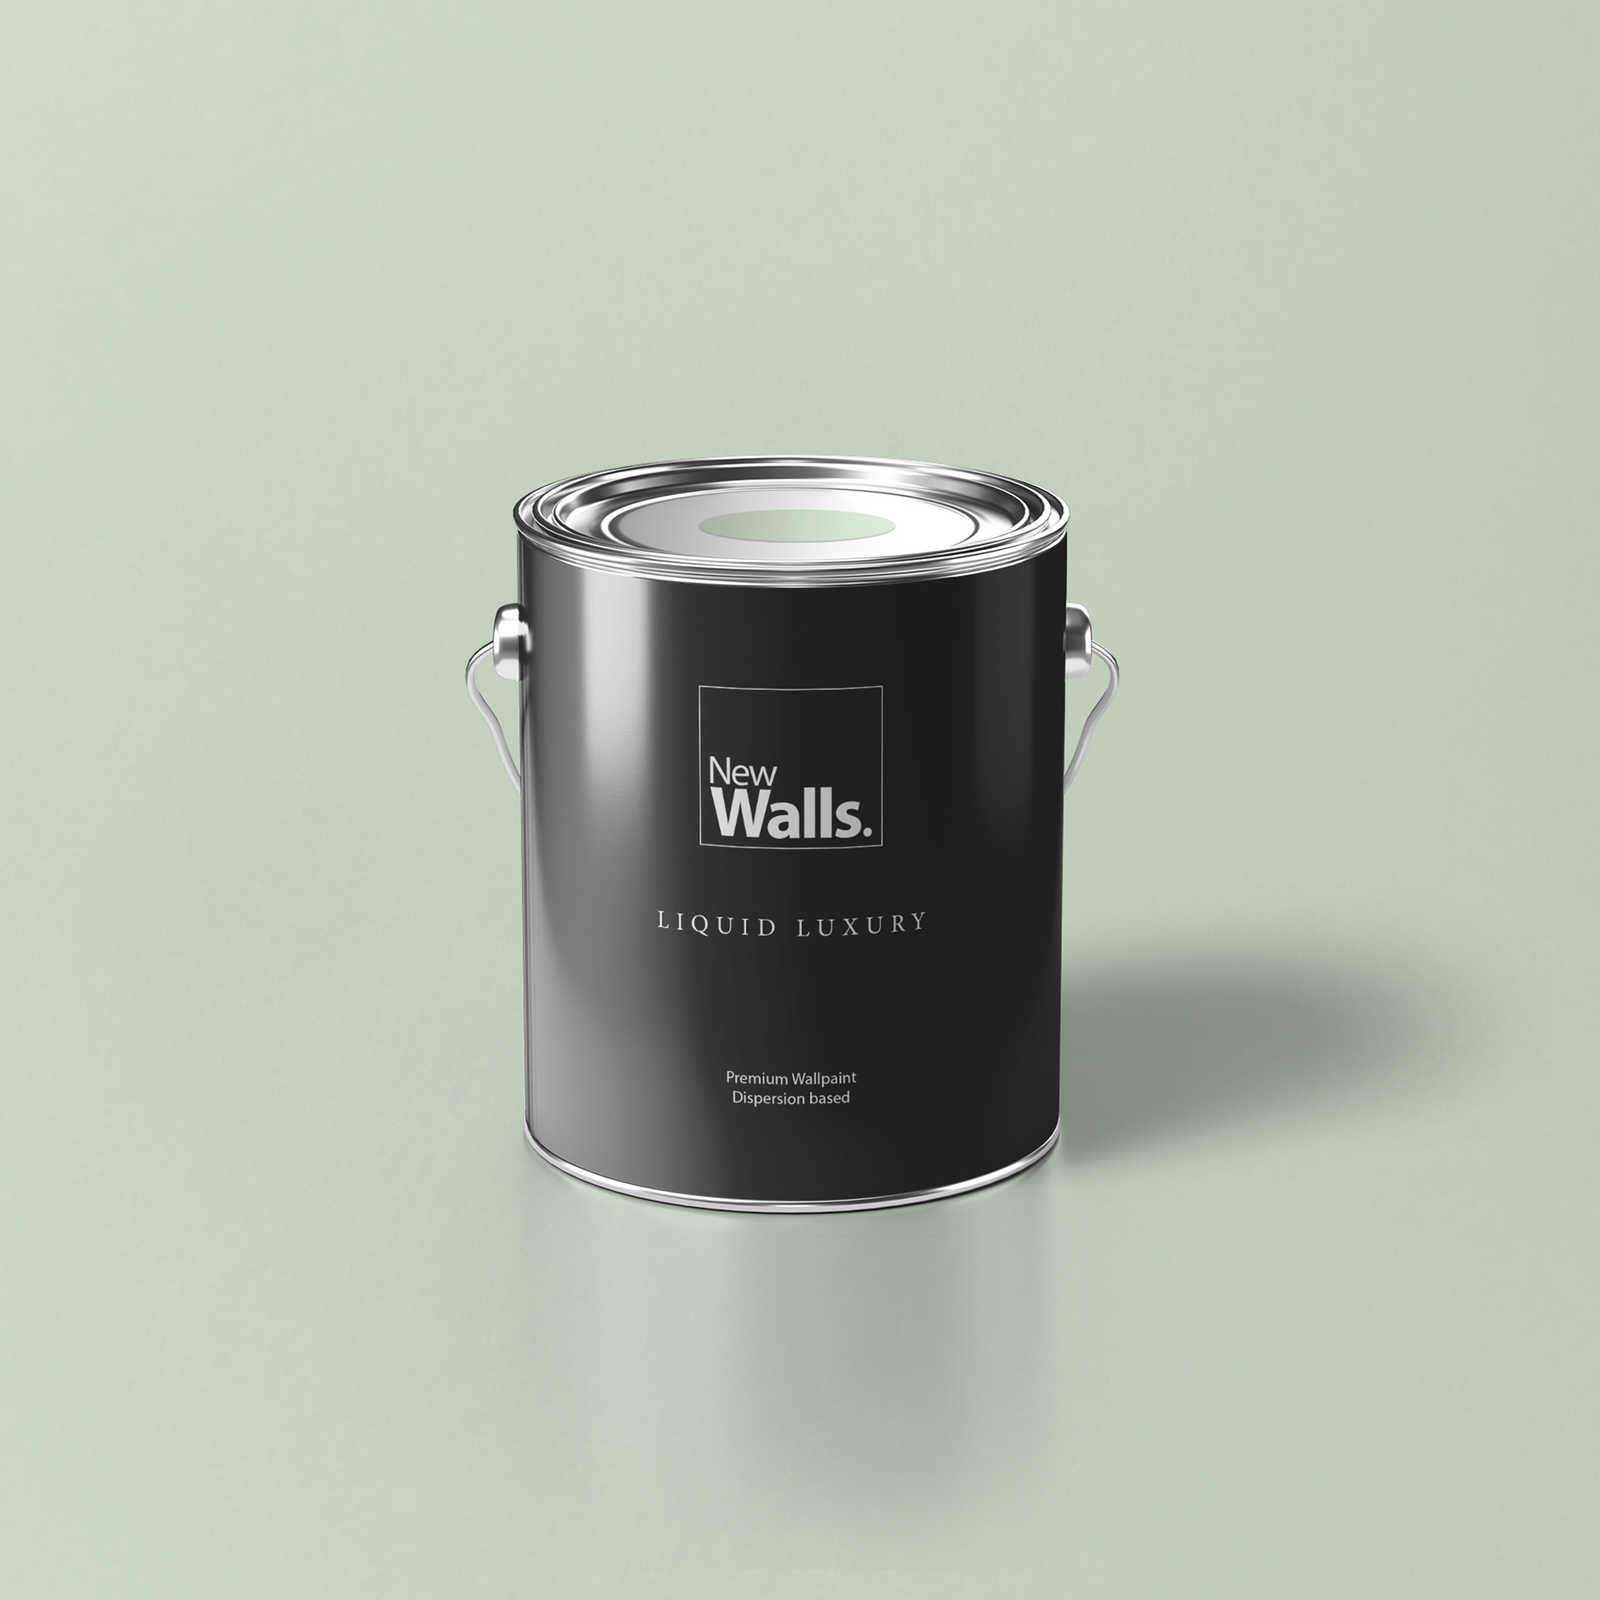 Premium Wall Paint Awakening Pastel Green »Sweet Sage« NW400 – 2.5 litre
